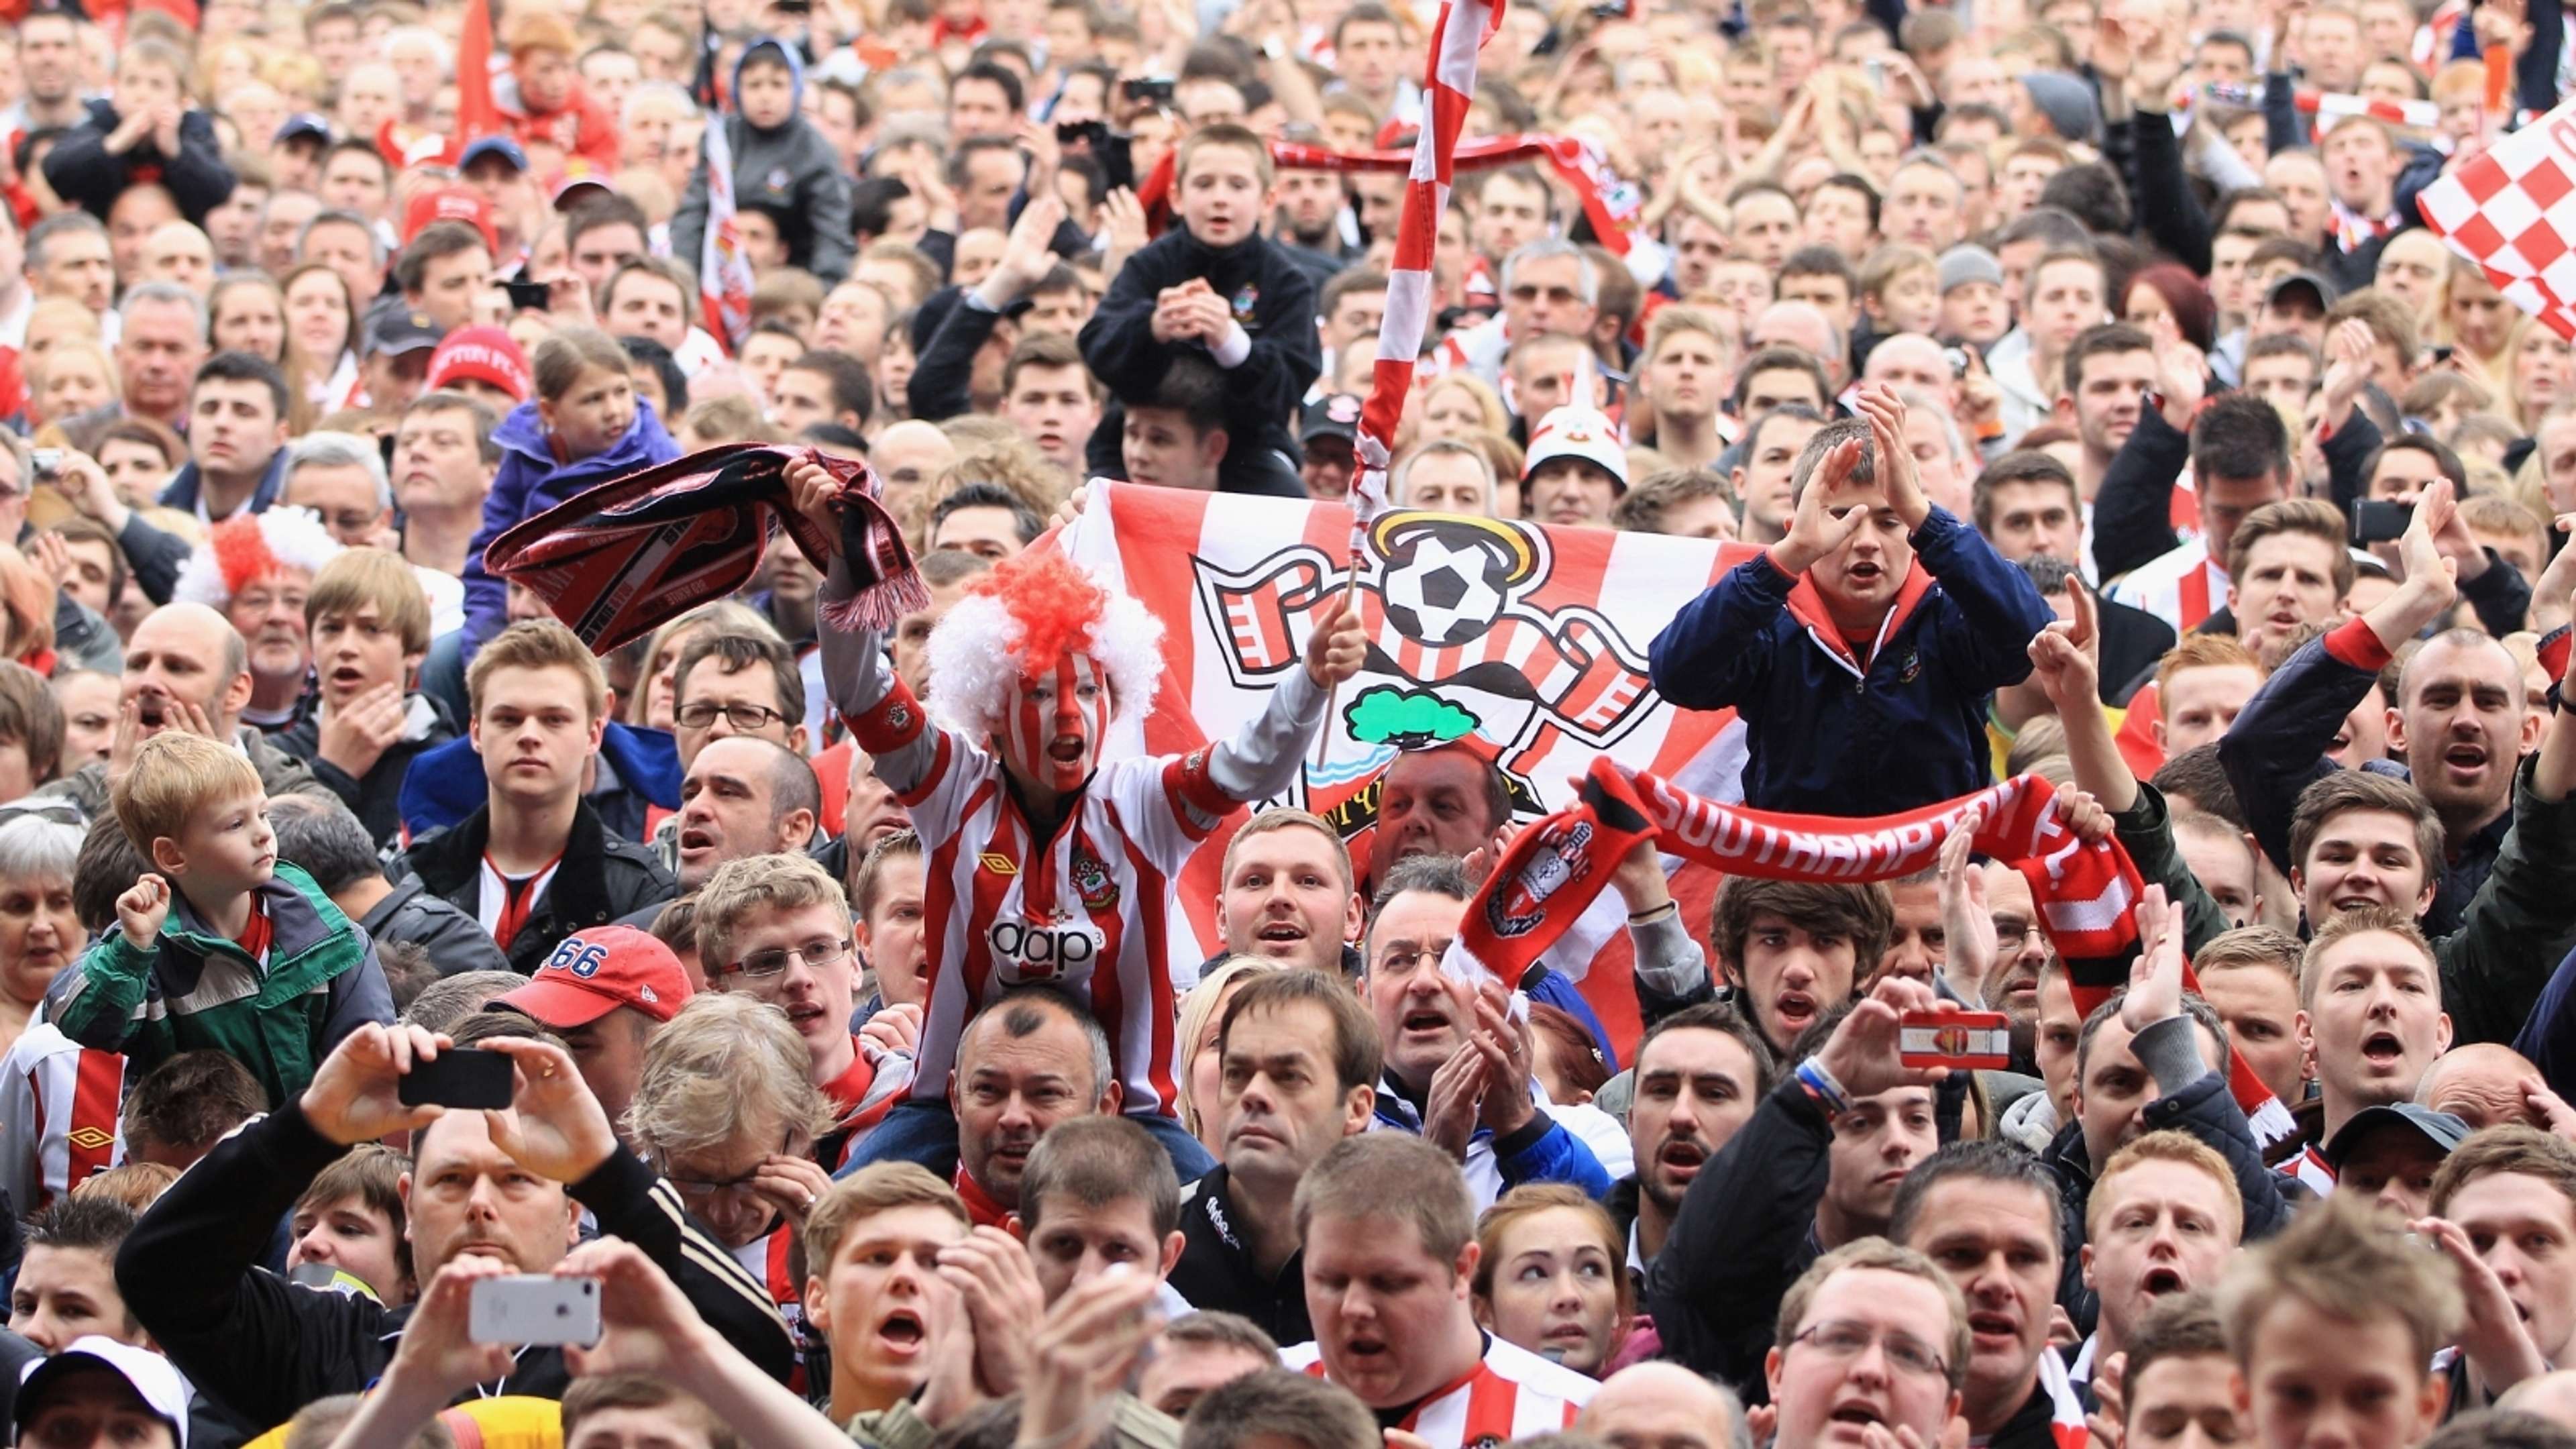 Southampton fans